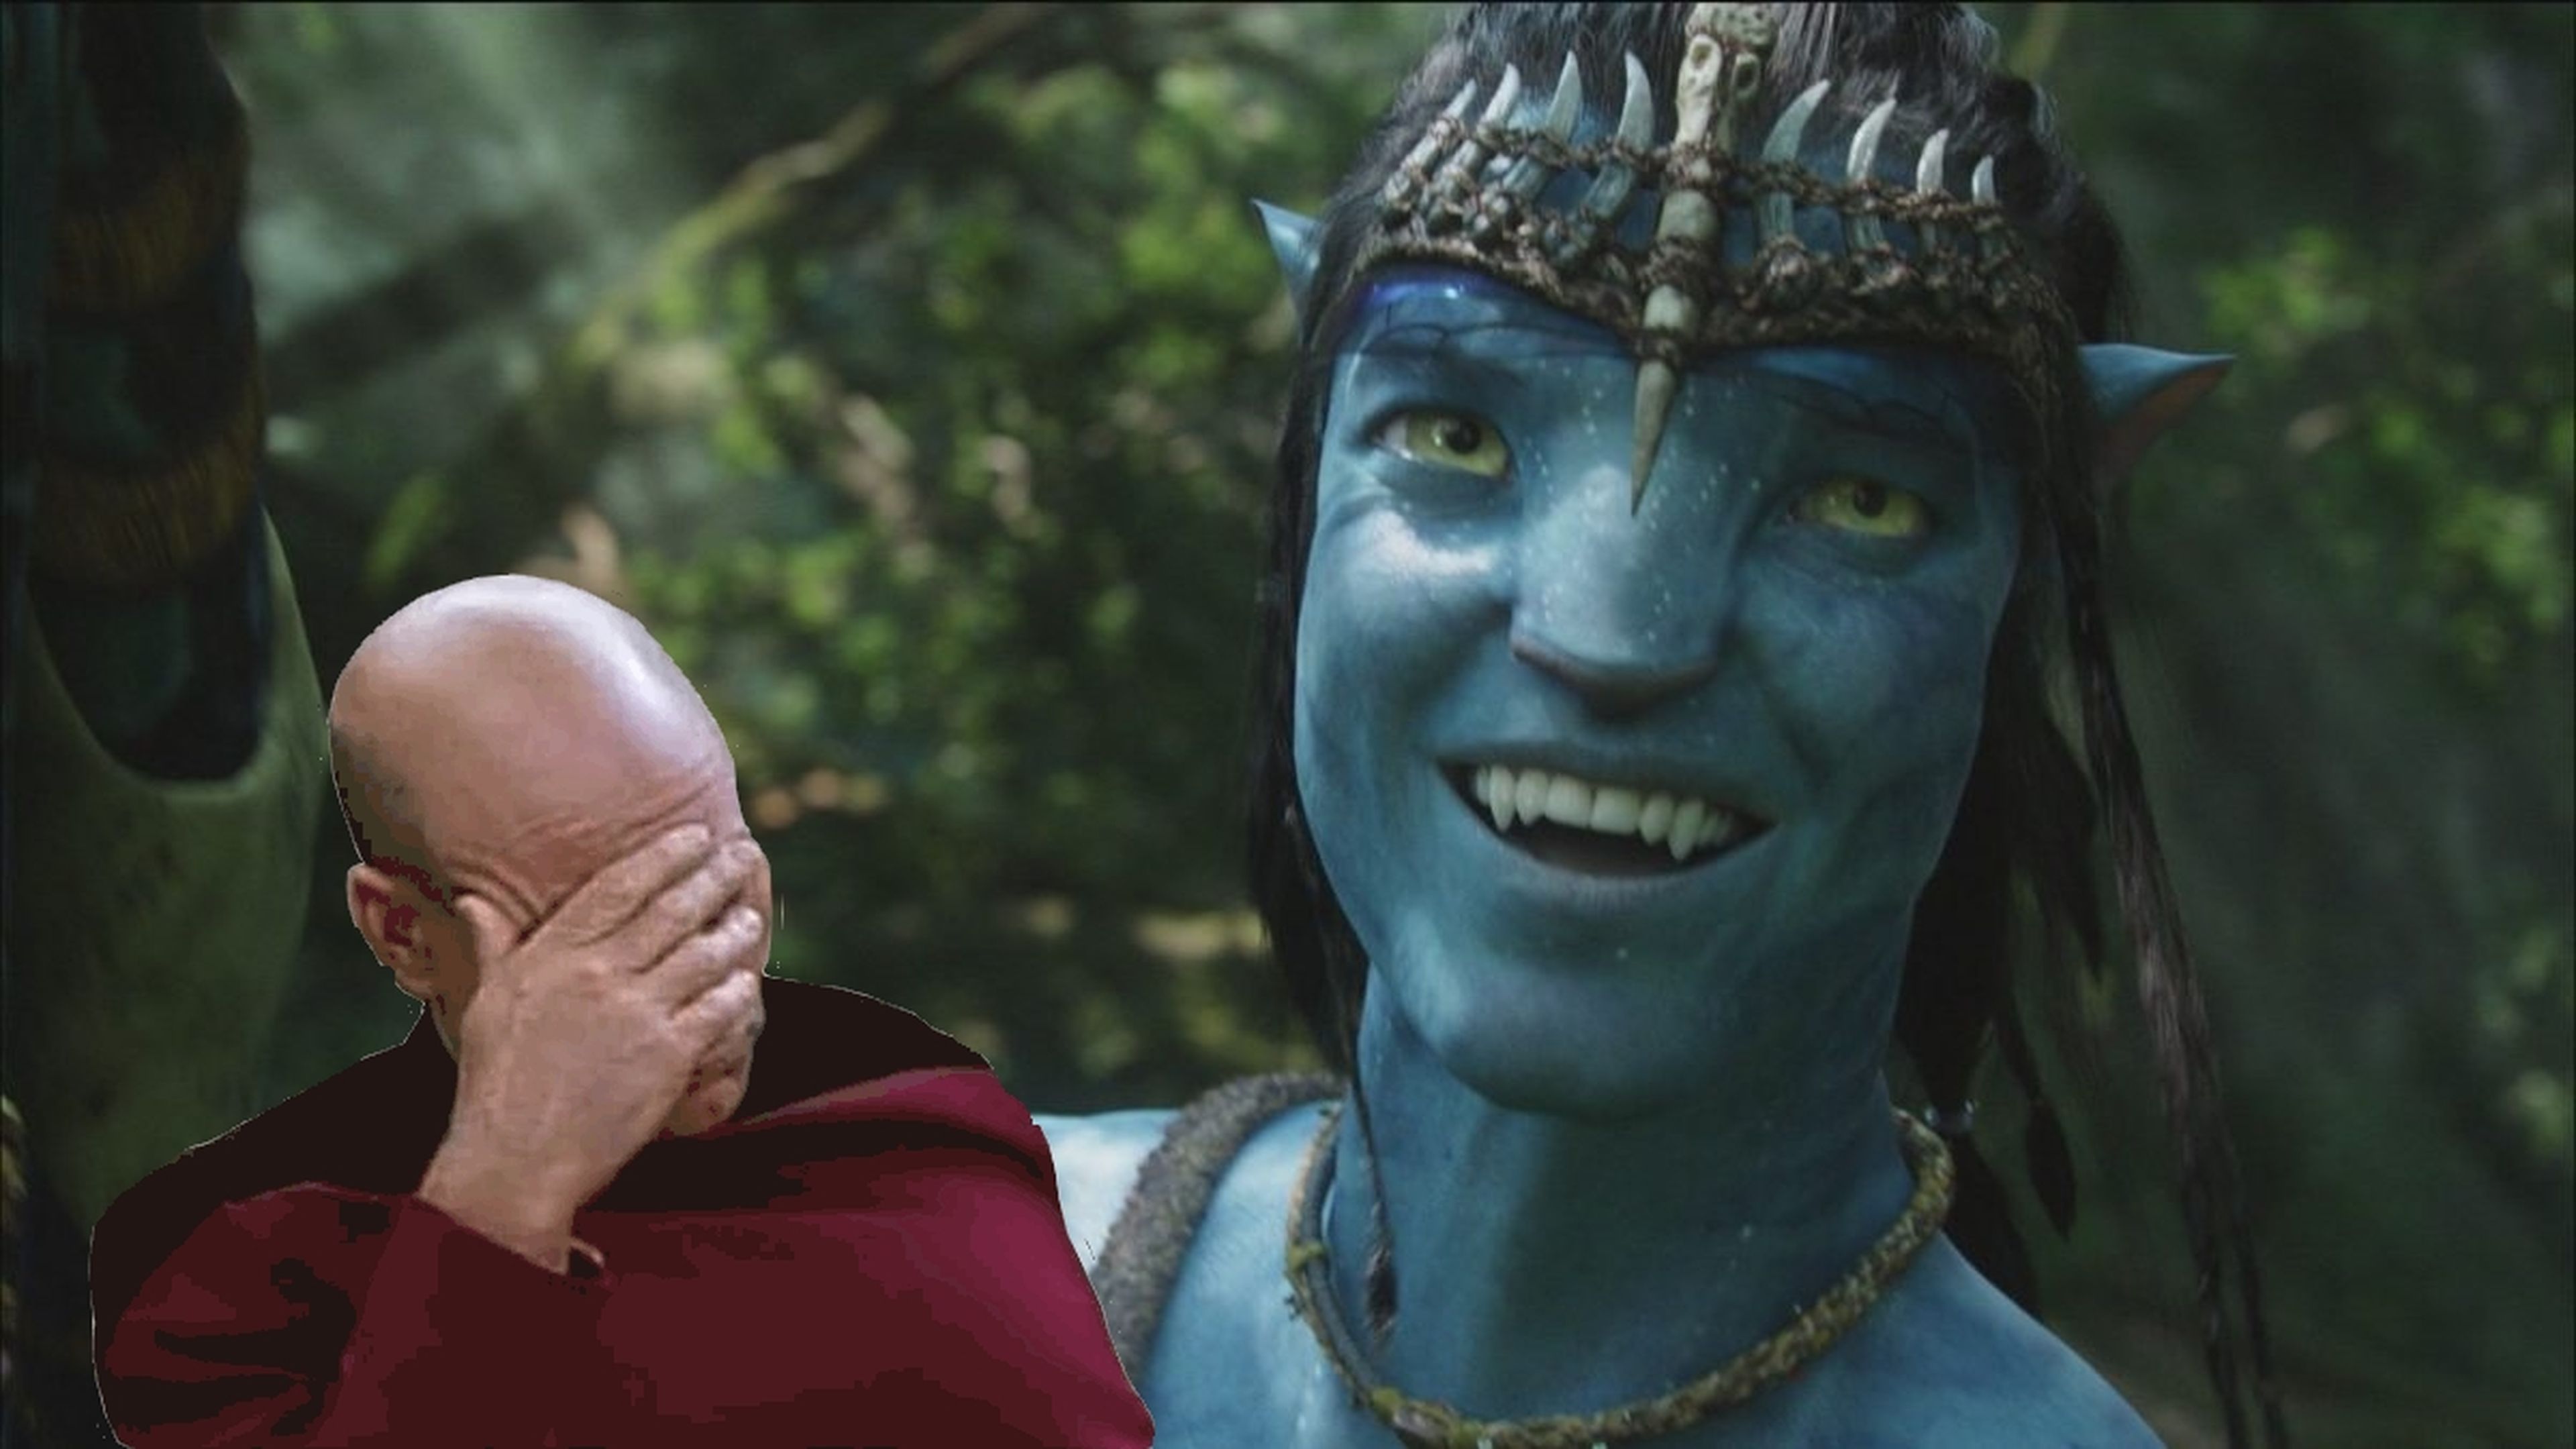 Cientos de personas piden la devolución del dinero en el reestreno de Avatar, porque pensaban que iban a ver Avatar 2